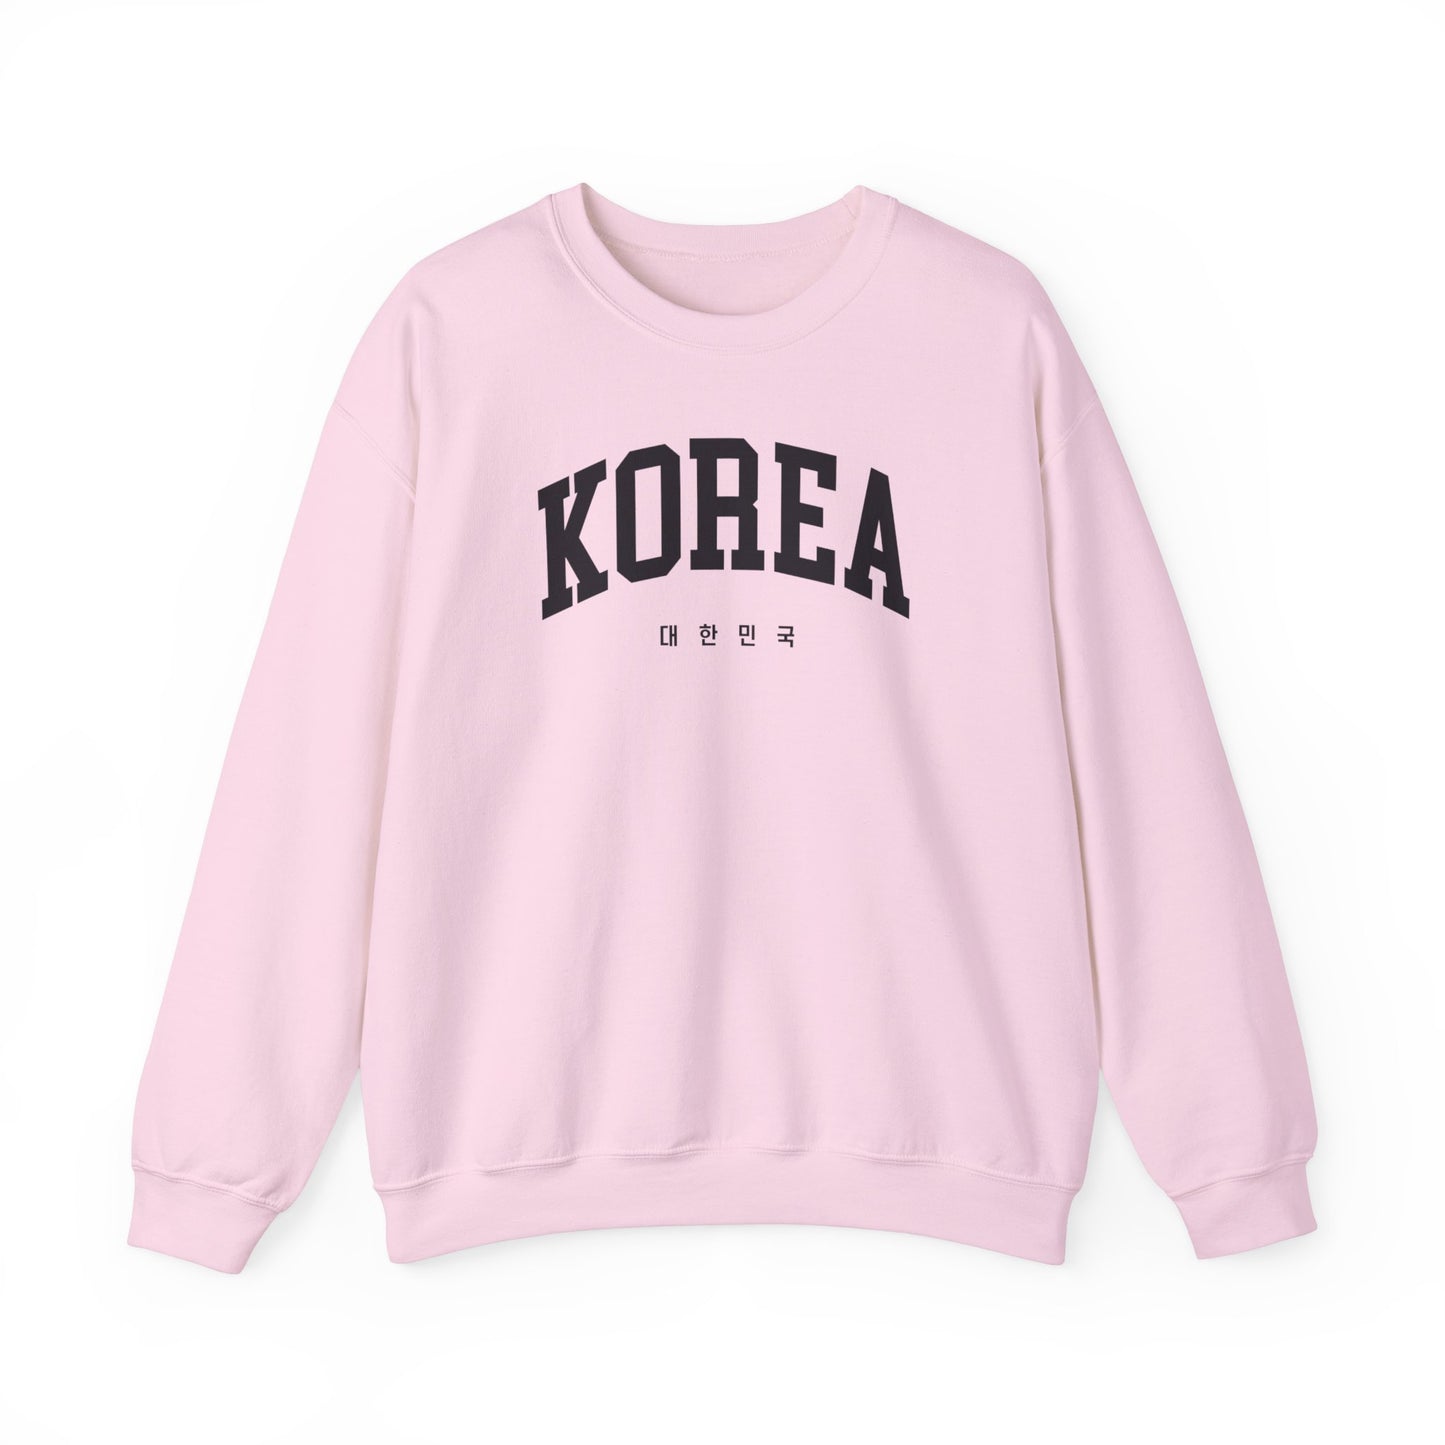 Korea Sweatshirt